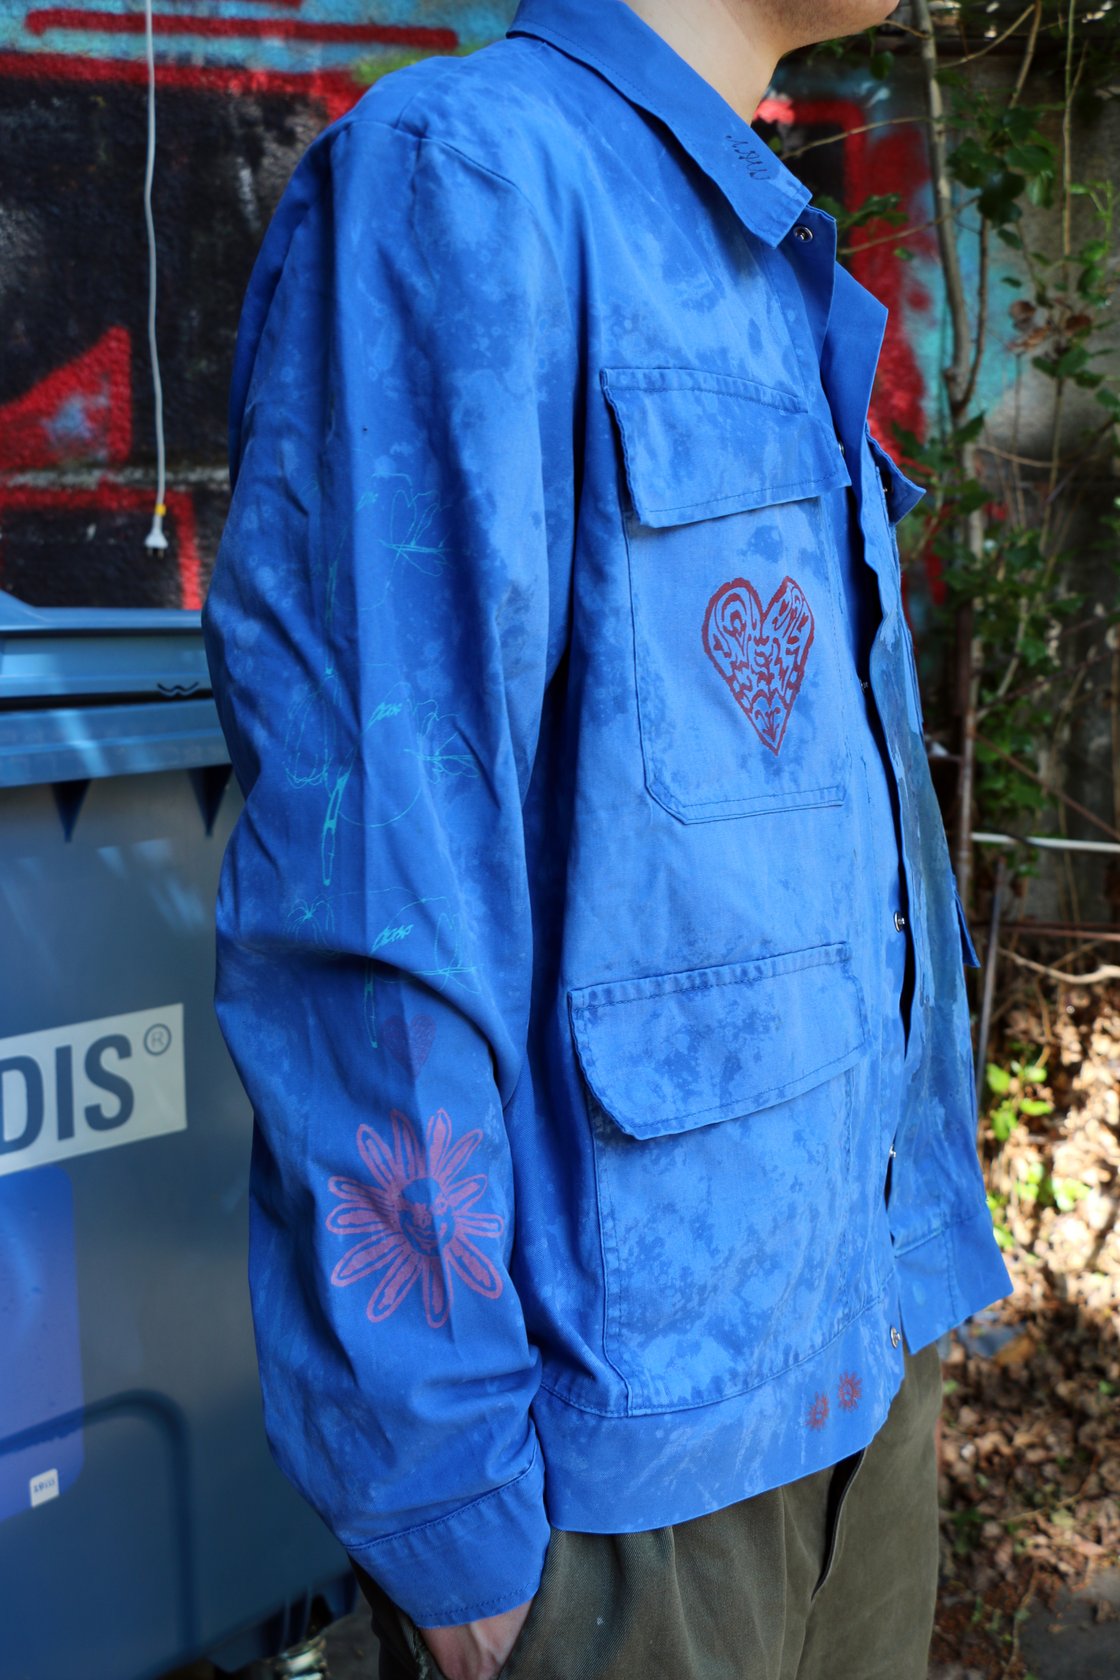 Image of chemicalwarfare jacket